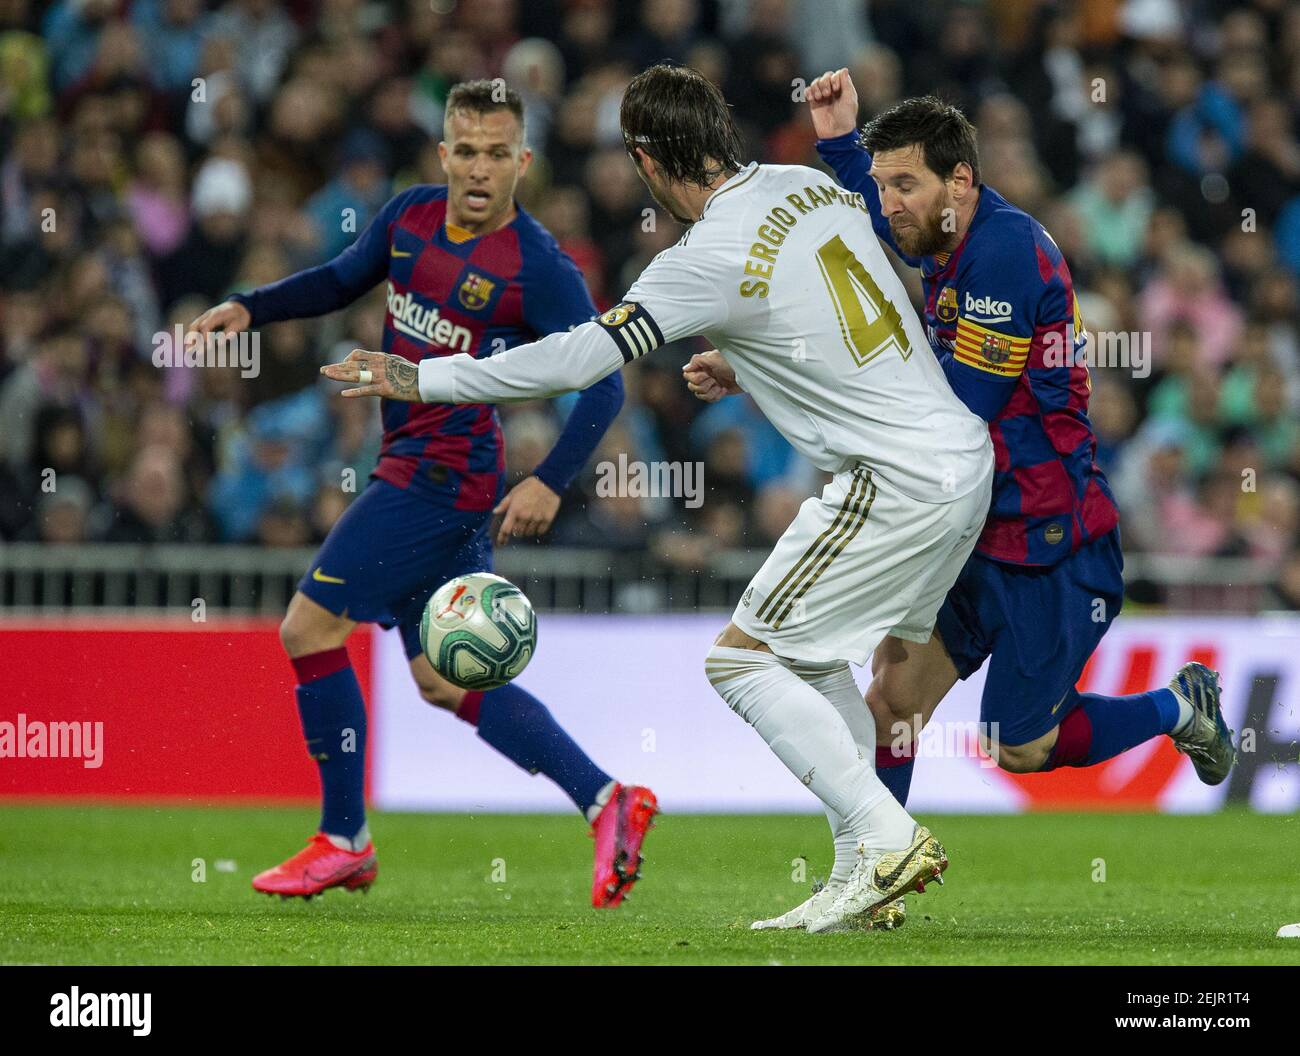 patrón Respeto a ti mismo entrada Sergio Ramos (L) y Lionel Messi (R) en acción durante el partido español la  Liga 26 entre el Real Madrid y el FC Barcelona en el estadio Santiago  Bernabeu de Madrid. Puntuación